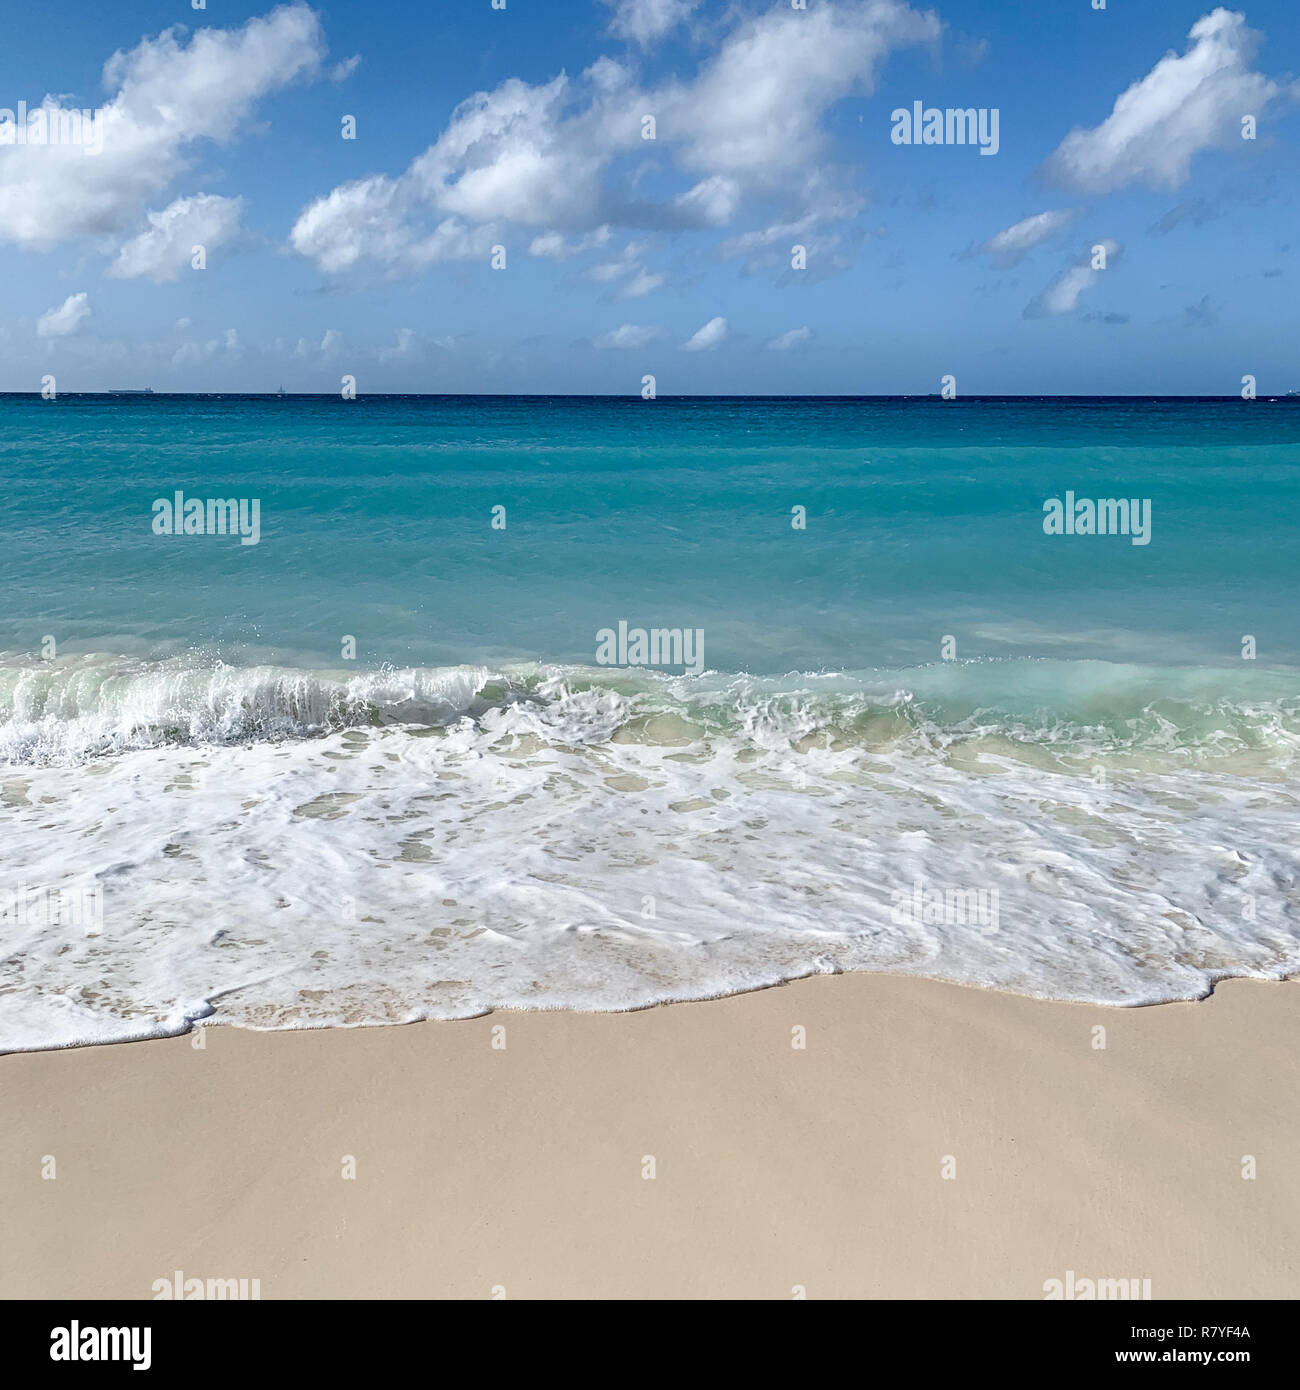 Aruba Beach - tropical spiaggia di sabbia bianca con acqua acquamarina - Divi beach è un top Aruba vacanza nei Caraibi - Isola Olandese / Isole Sottovento Foto Stock